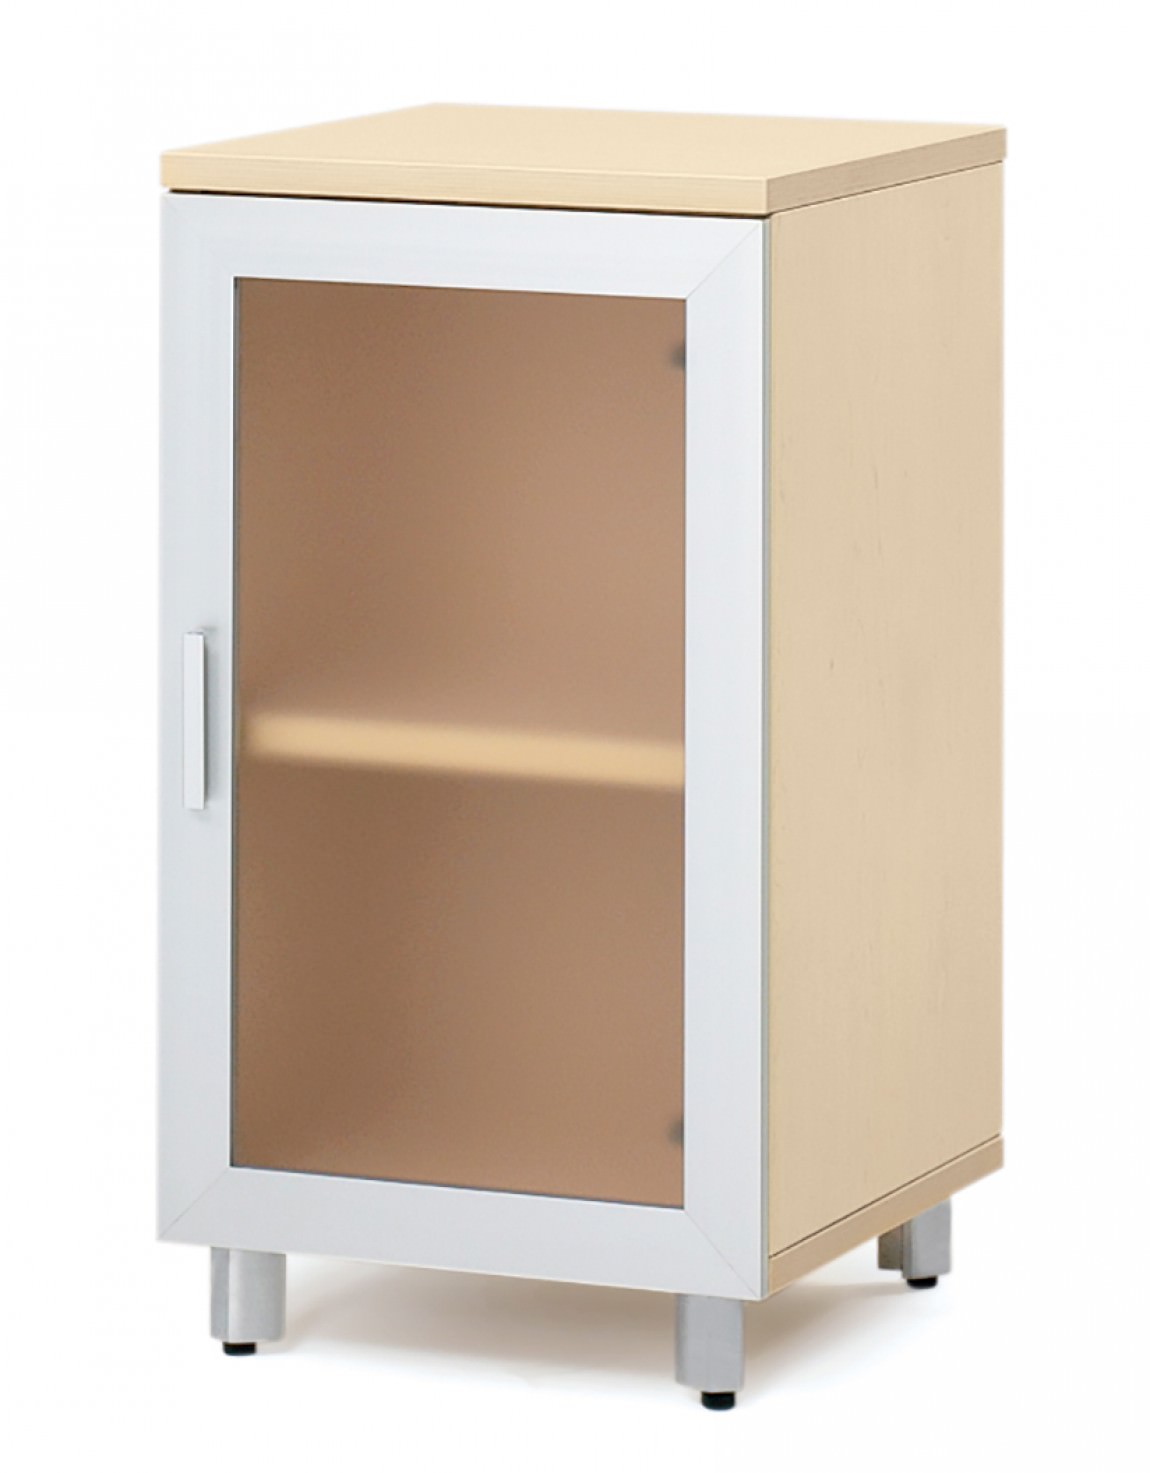 https://madisonliquidators.com/images/p/1150/15897-small-storage-cabinet-with-glass-door-1.jpg